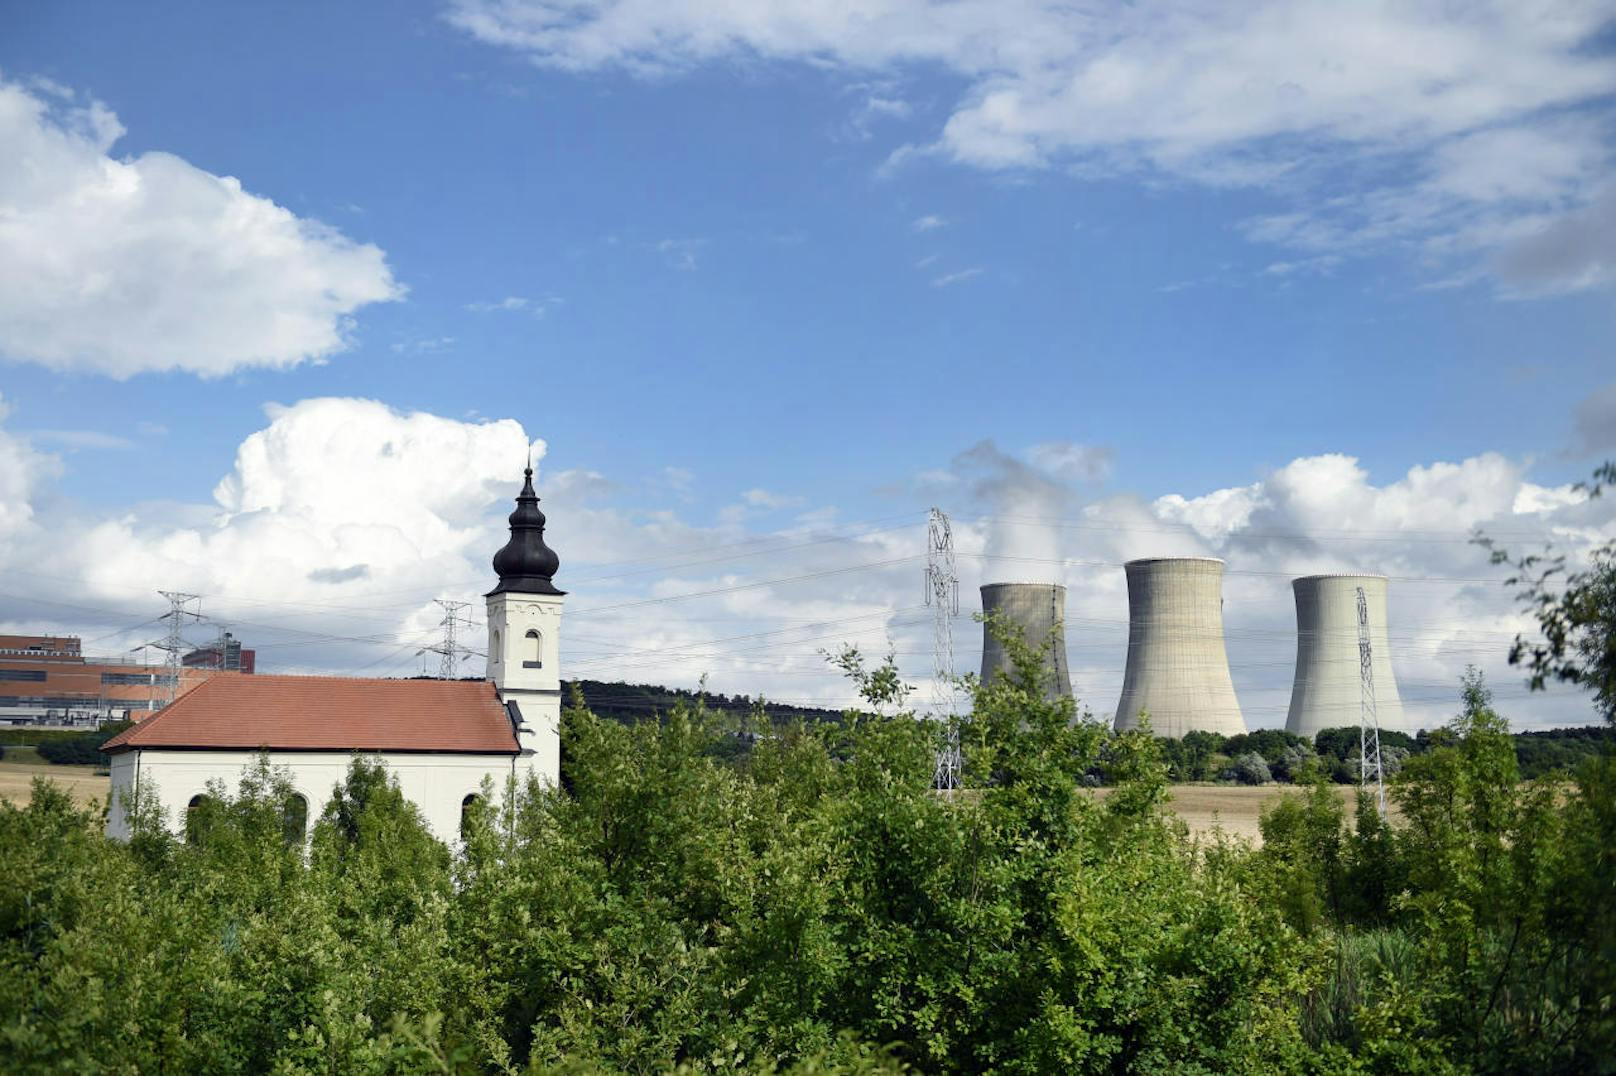 Das slowakische Kernkraftwerk AKW Mochovce liegt in der Nähe des Dorfes Mochovce, zwischen den Städten Nitra und Levice Nitra und Levice, in Okres Levice,120 km von Bratislava entfernt.